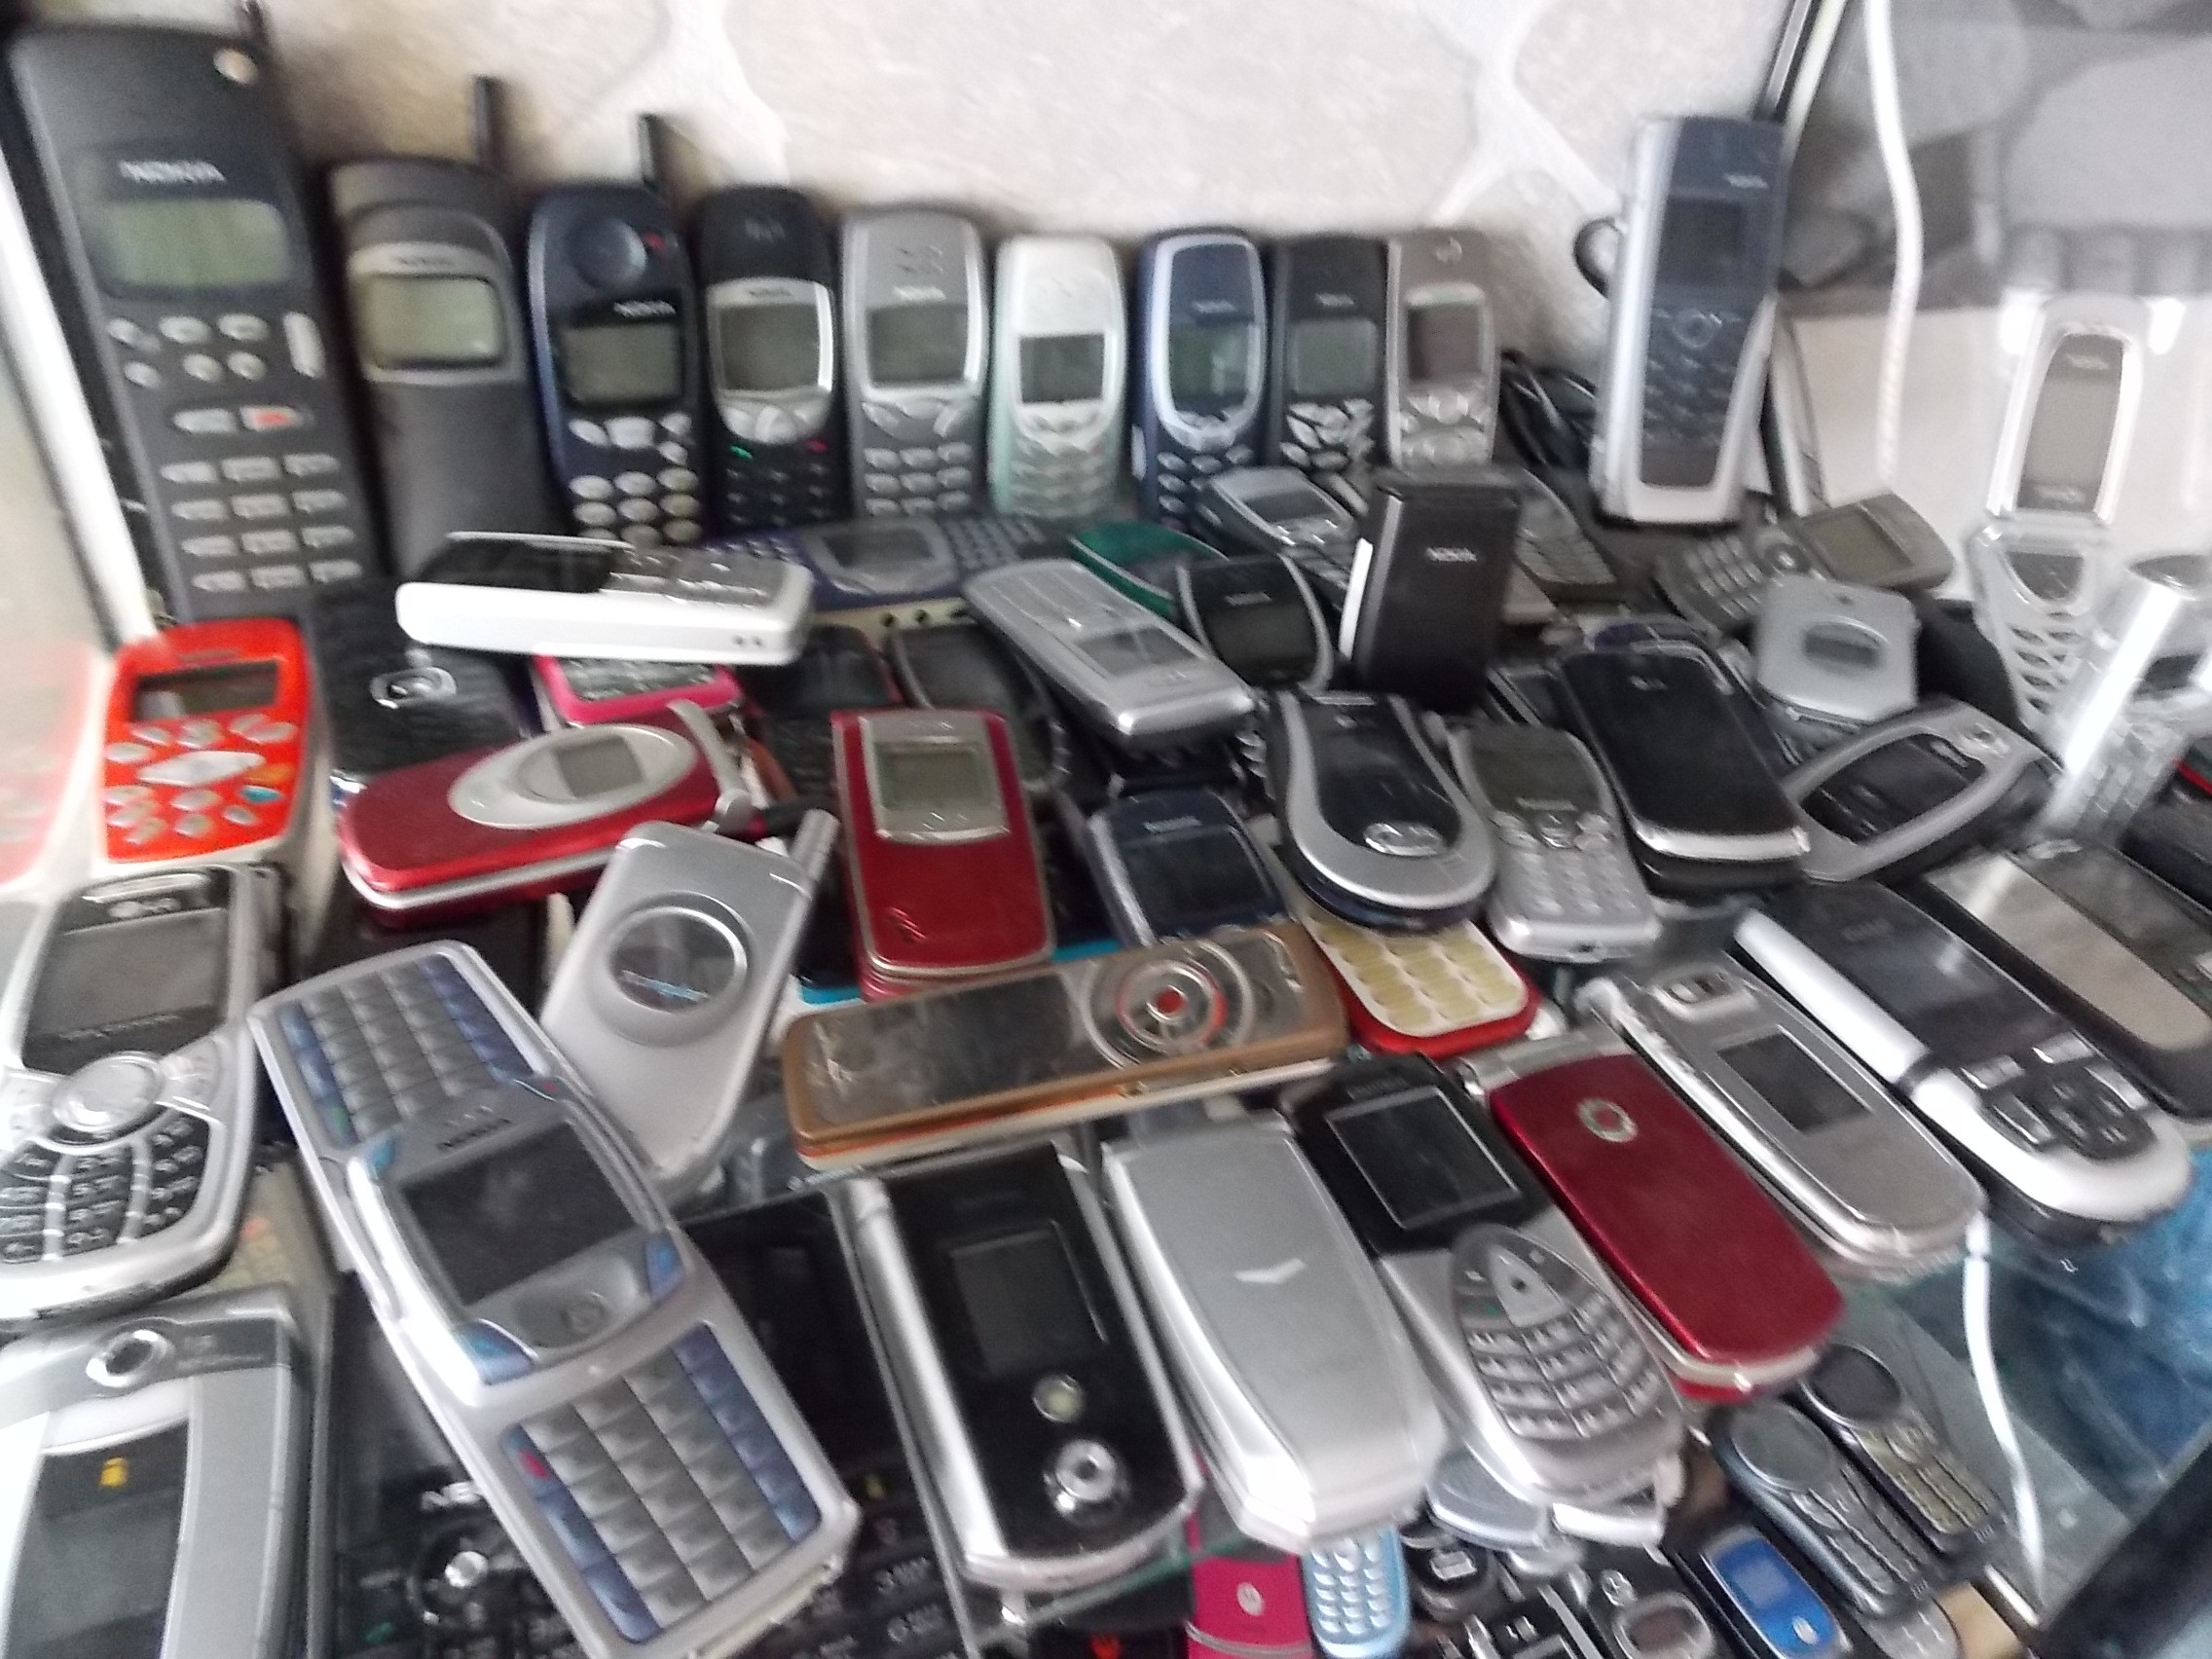 Бу телефоны в спб. Много телефонов. Коллекция мобильных телефонов. Много телефонов Nokia. Магазин старые Сотовые.